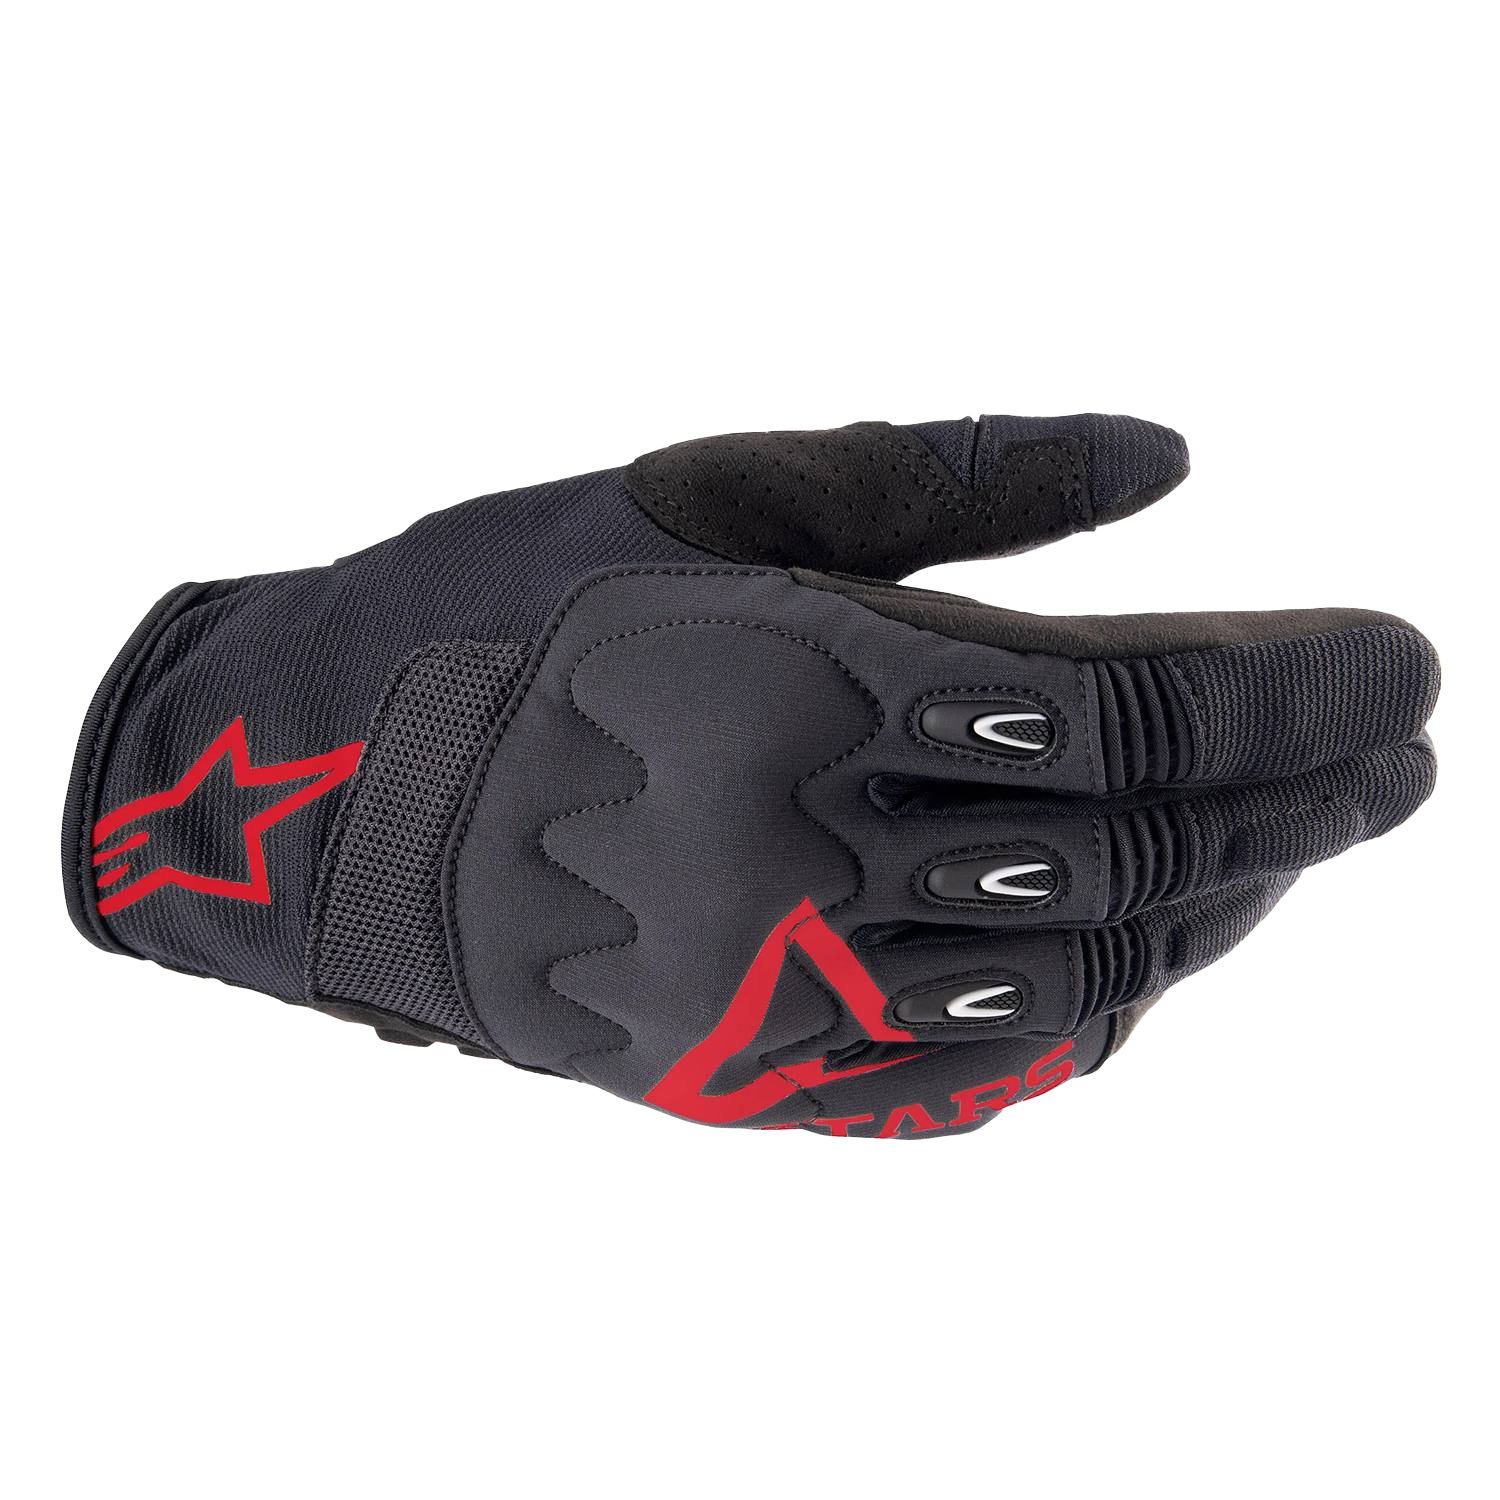 Image of Alpinestars Techdura Gloves Fire Red Black Größe S